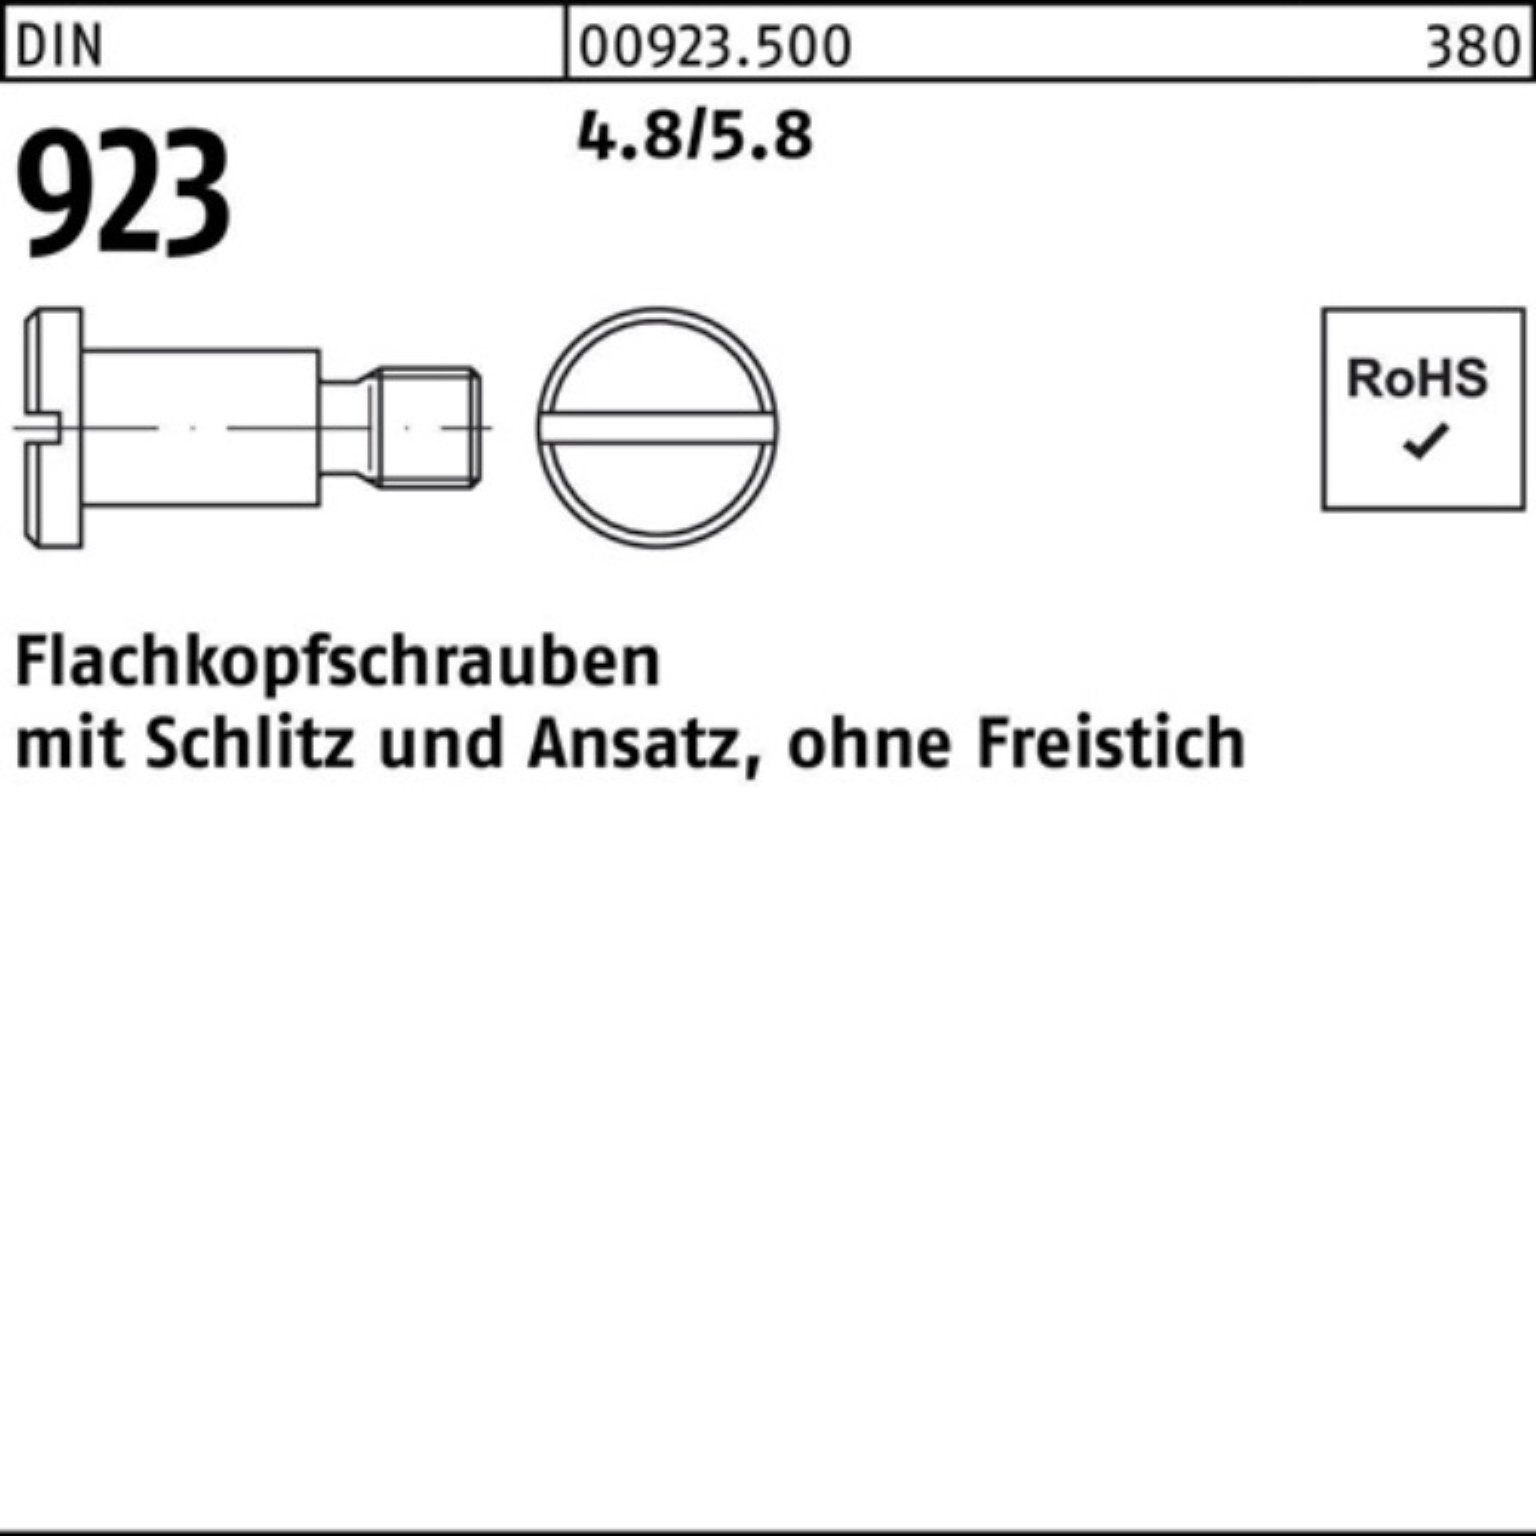 M8x12x11,0 Flachkopfschraube DIN Reyher 4.8/5.8 Pack Schraube 923 100er Schlitz/Ansatz